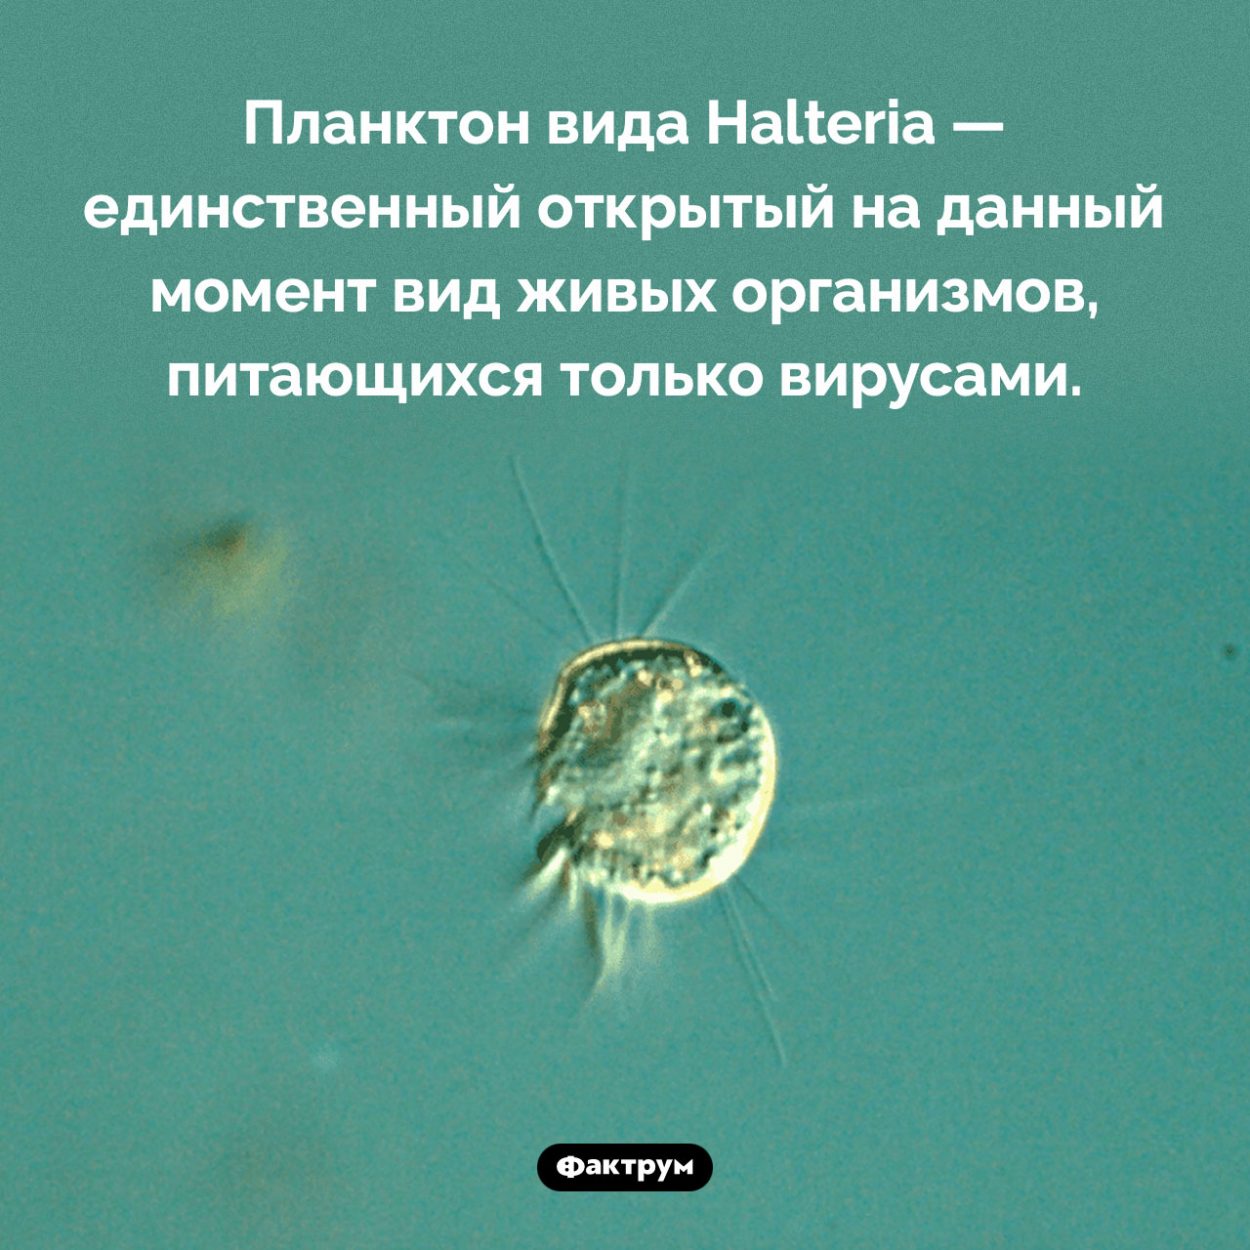 Кто питается вирусами. Планктон вида Halteria — единственный открытый на данный момент вид живых организмов, питающихся только вирусами.